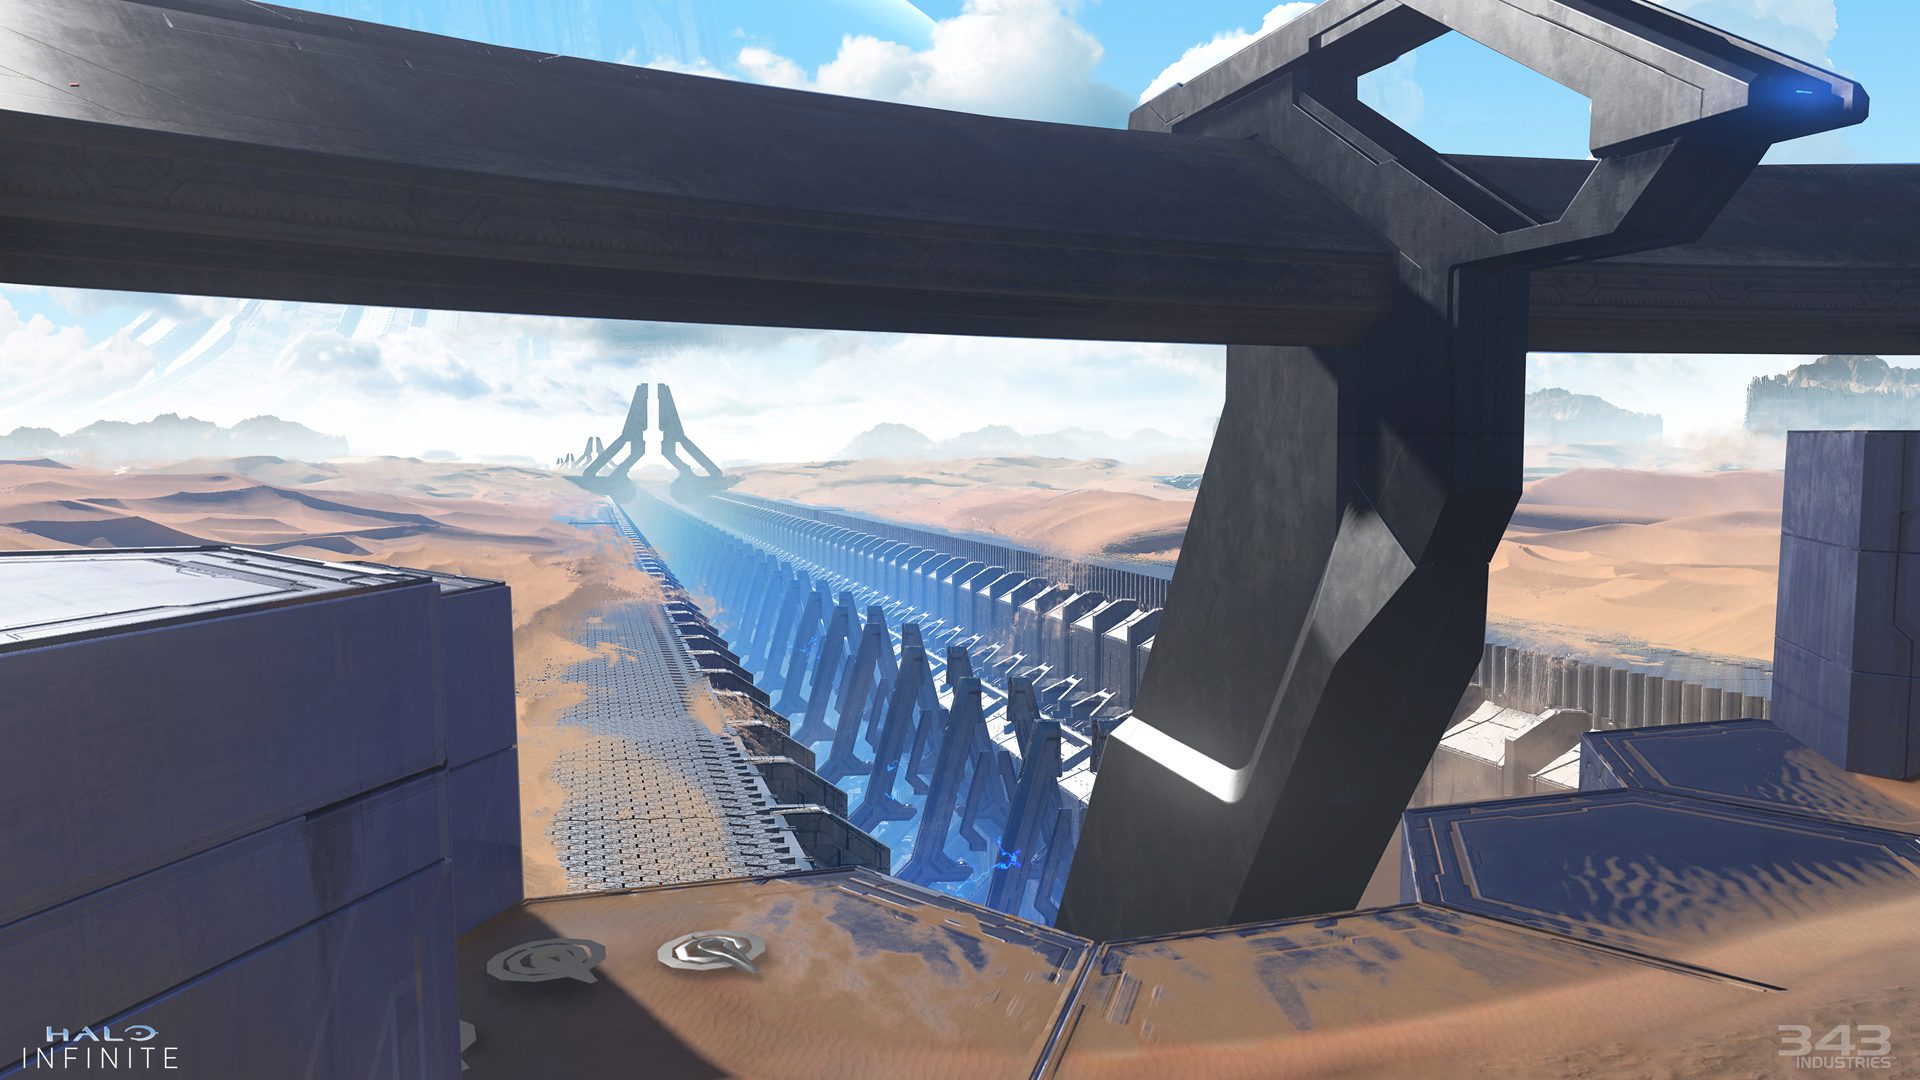 343 Industries comparte un montón de nuevo arte conceptual de Halo Infinite - 343 Industries ha compartido en la web oficial un montón de imágenes con nuevo y genial concept art de Halo Infinite.